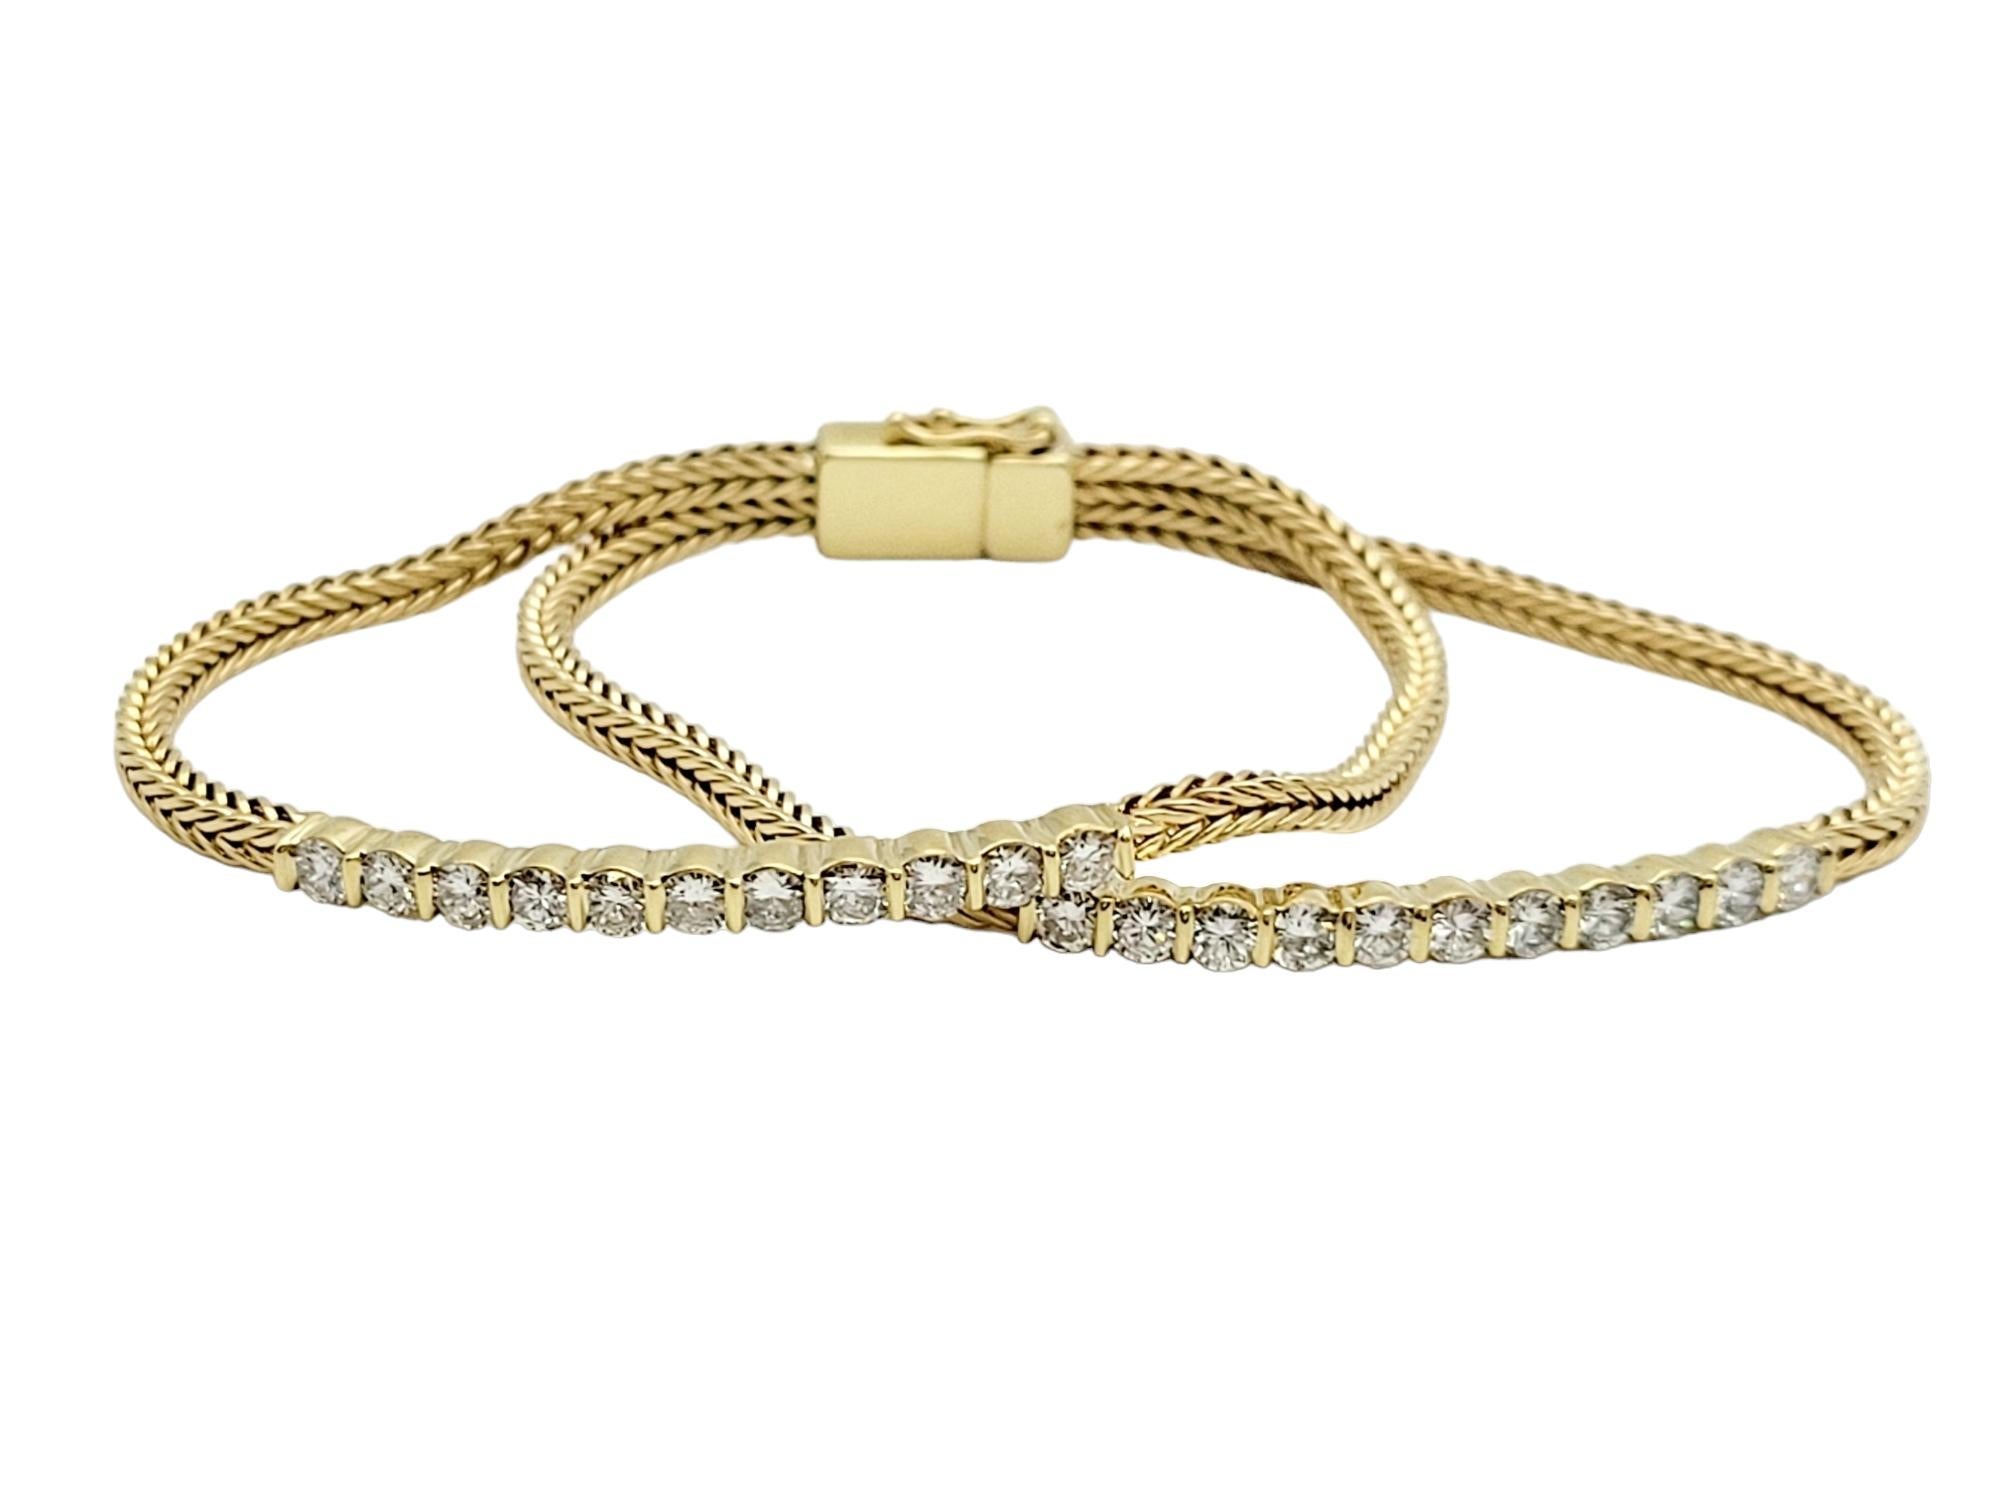 Ce bracelet exquis en diamant et en or témoigne de l'opulence et du raffinement de l'artisanat. Fabriqué en or 18 carats lustré, ce bracelet présente un design captivant qui marie sans effort l'élégance intemporelle des diamants à la chaleur de